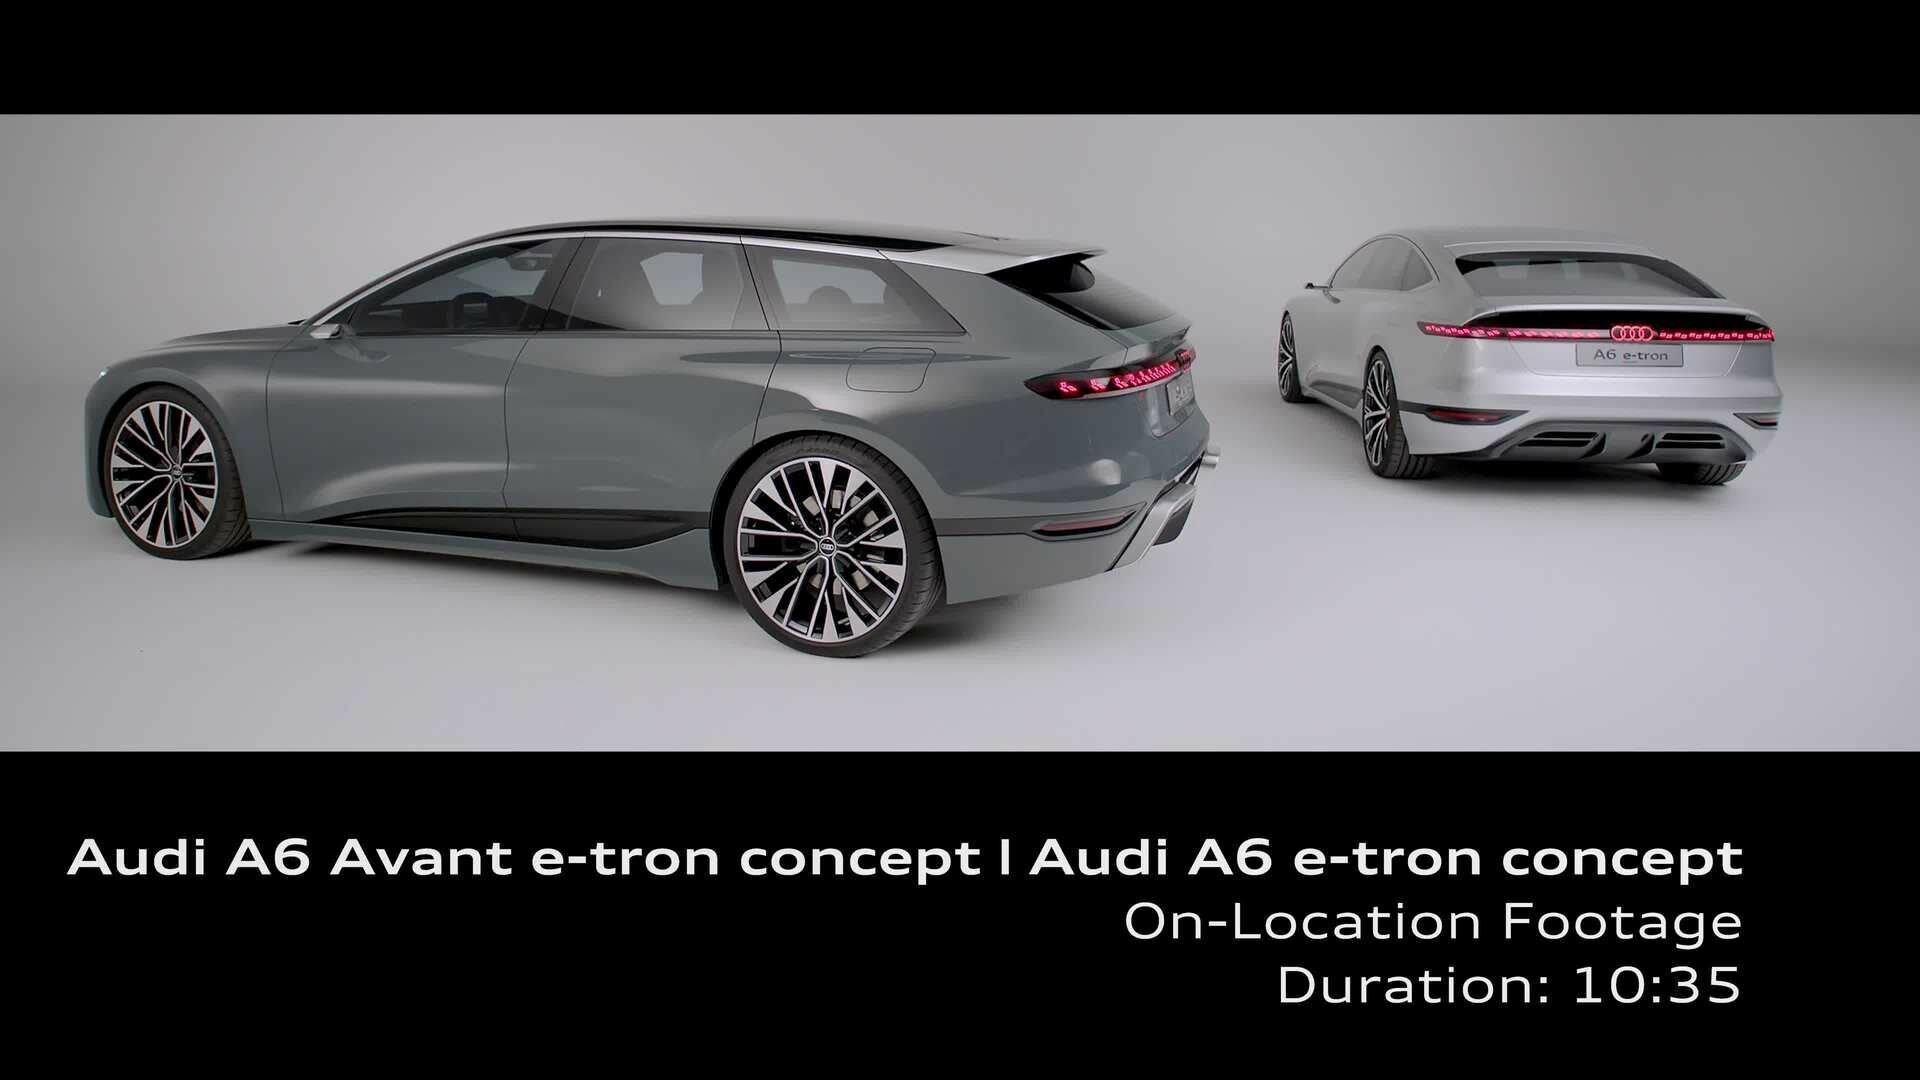 Footage: Audi A6 Avant e-tron concept & Audi A6 e-tron concept (on location)